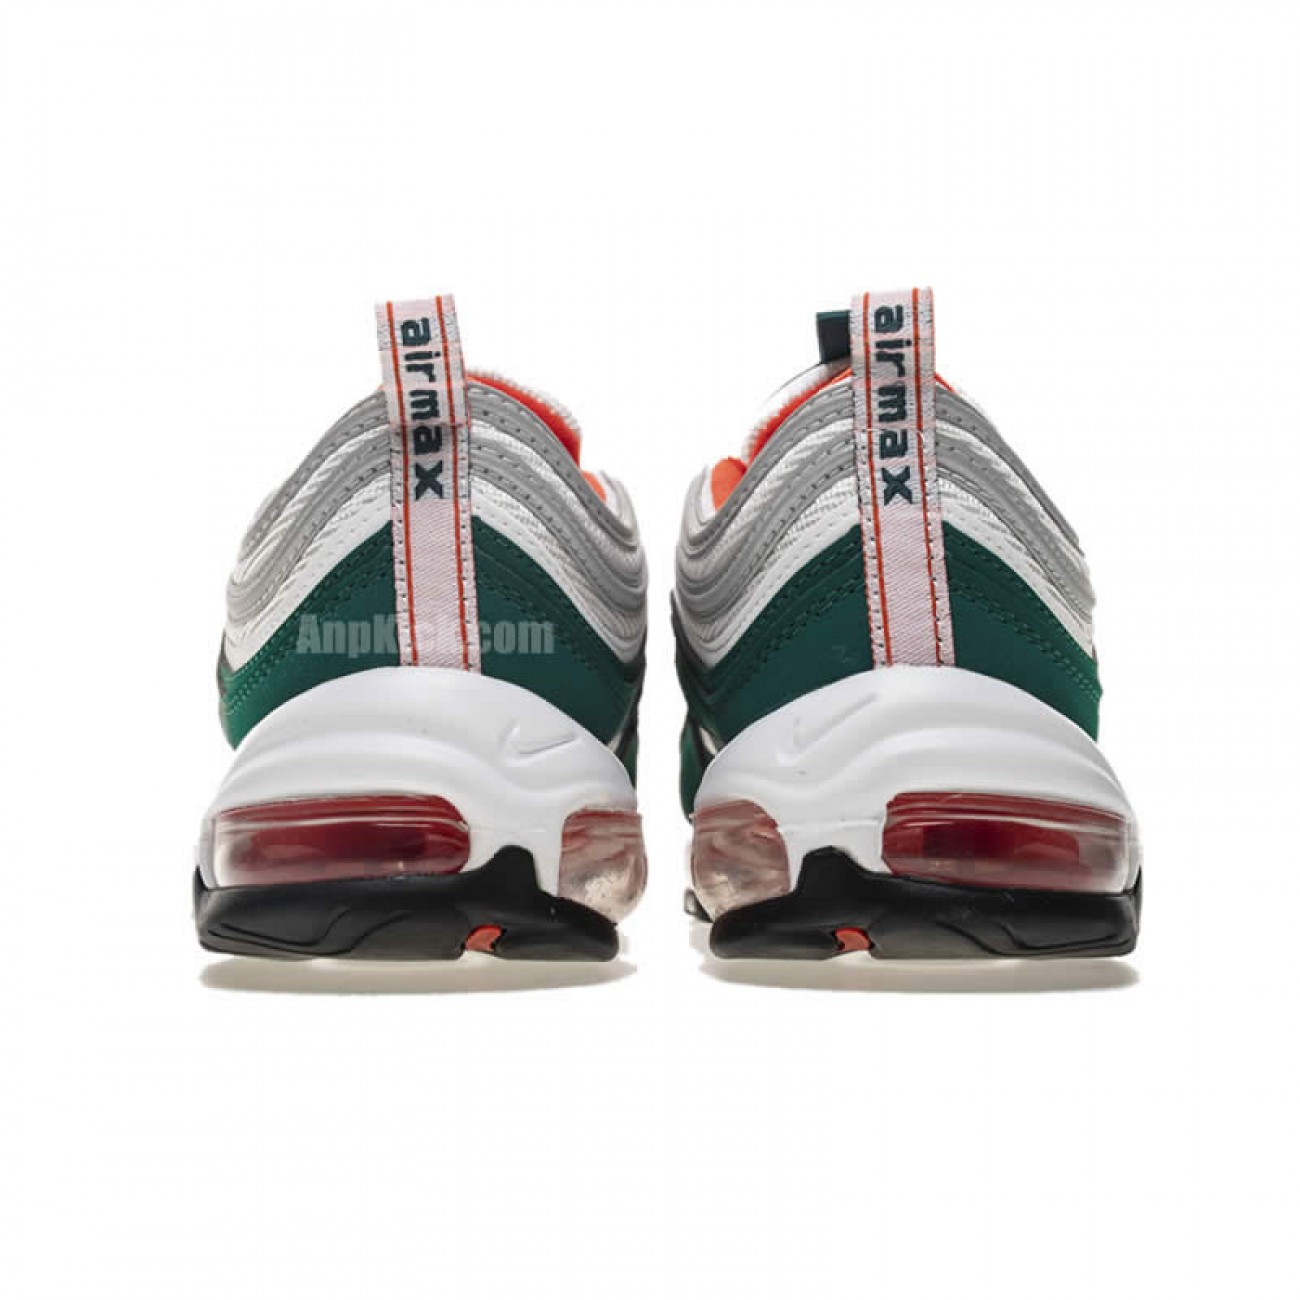 Nike Air Max 97 Green/Grey Bullet 97s Shoes 921522-300